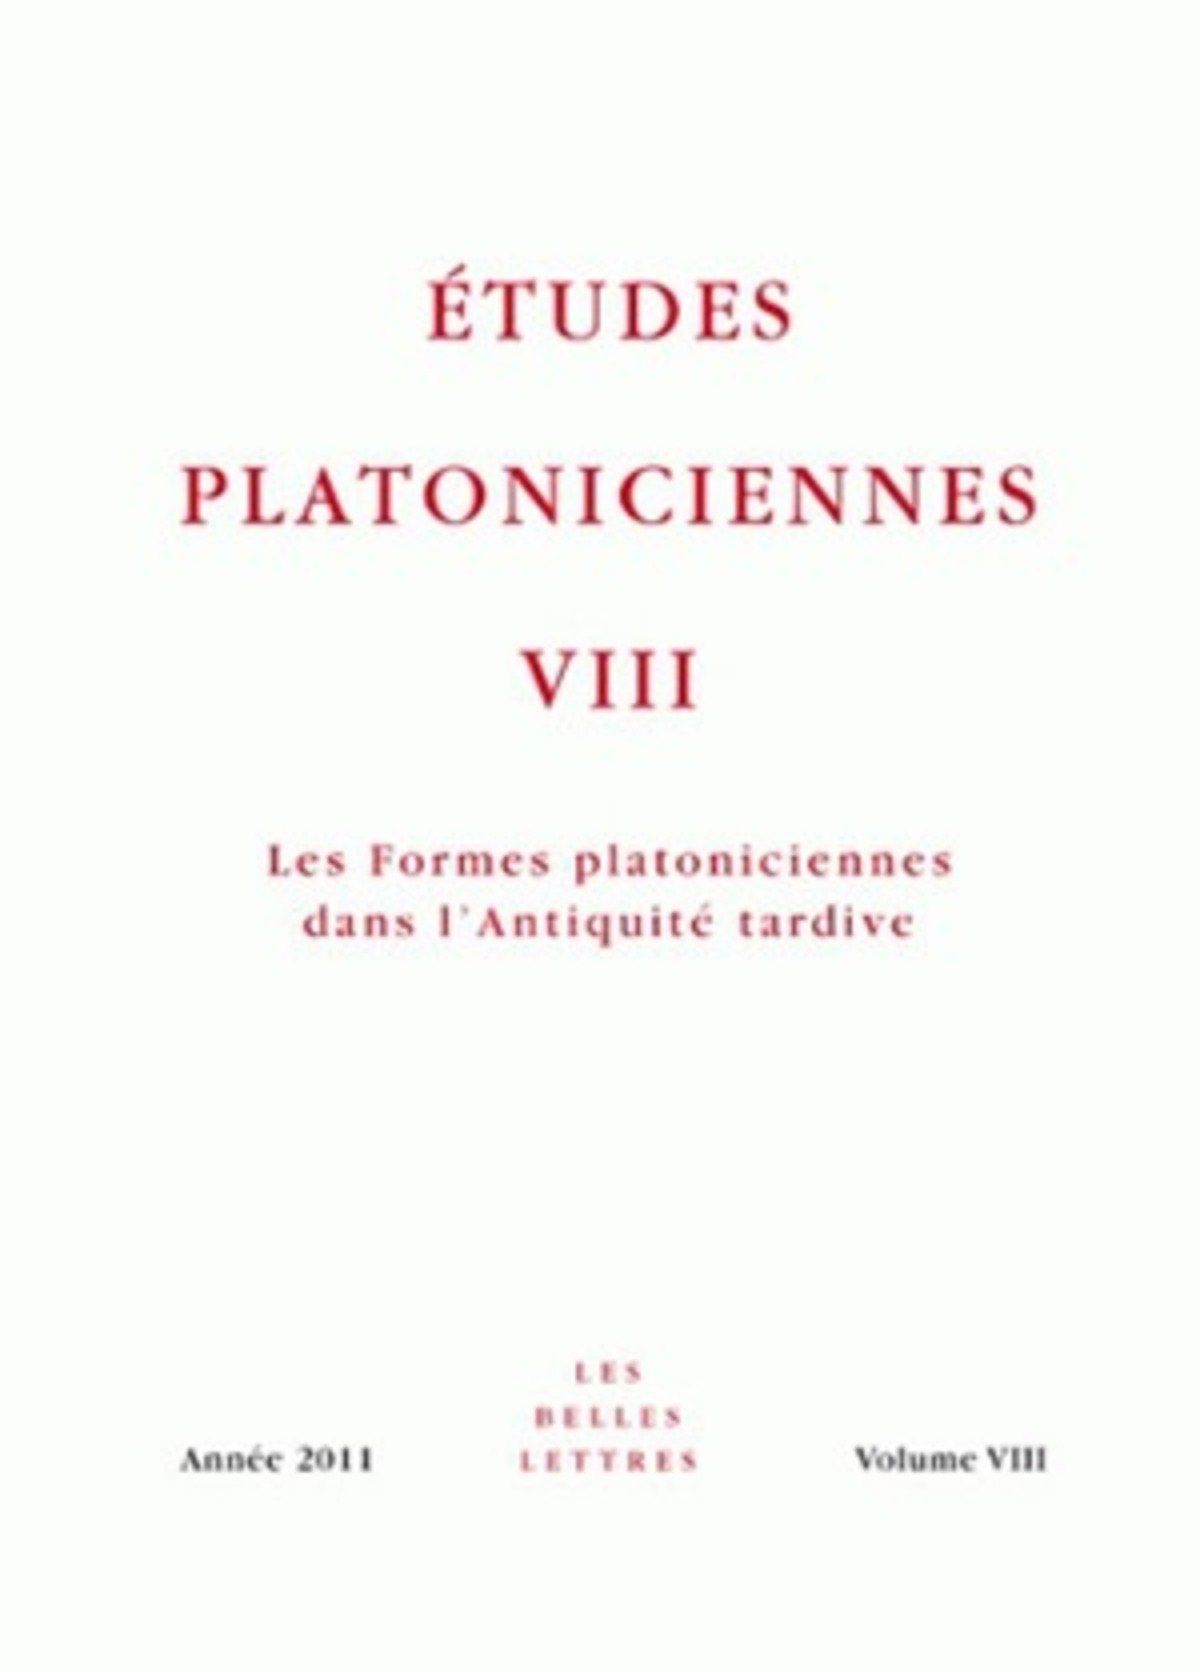 Études platoniciennes VIII